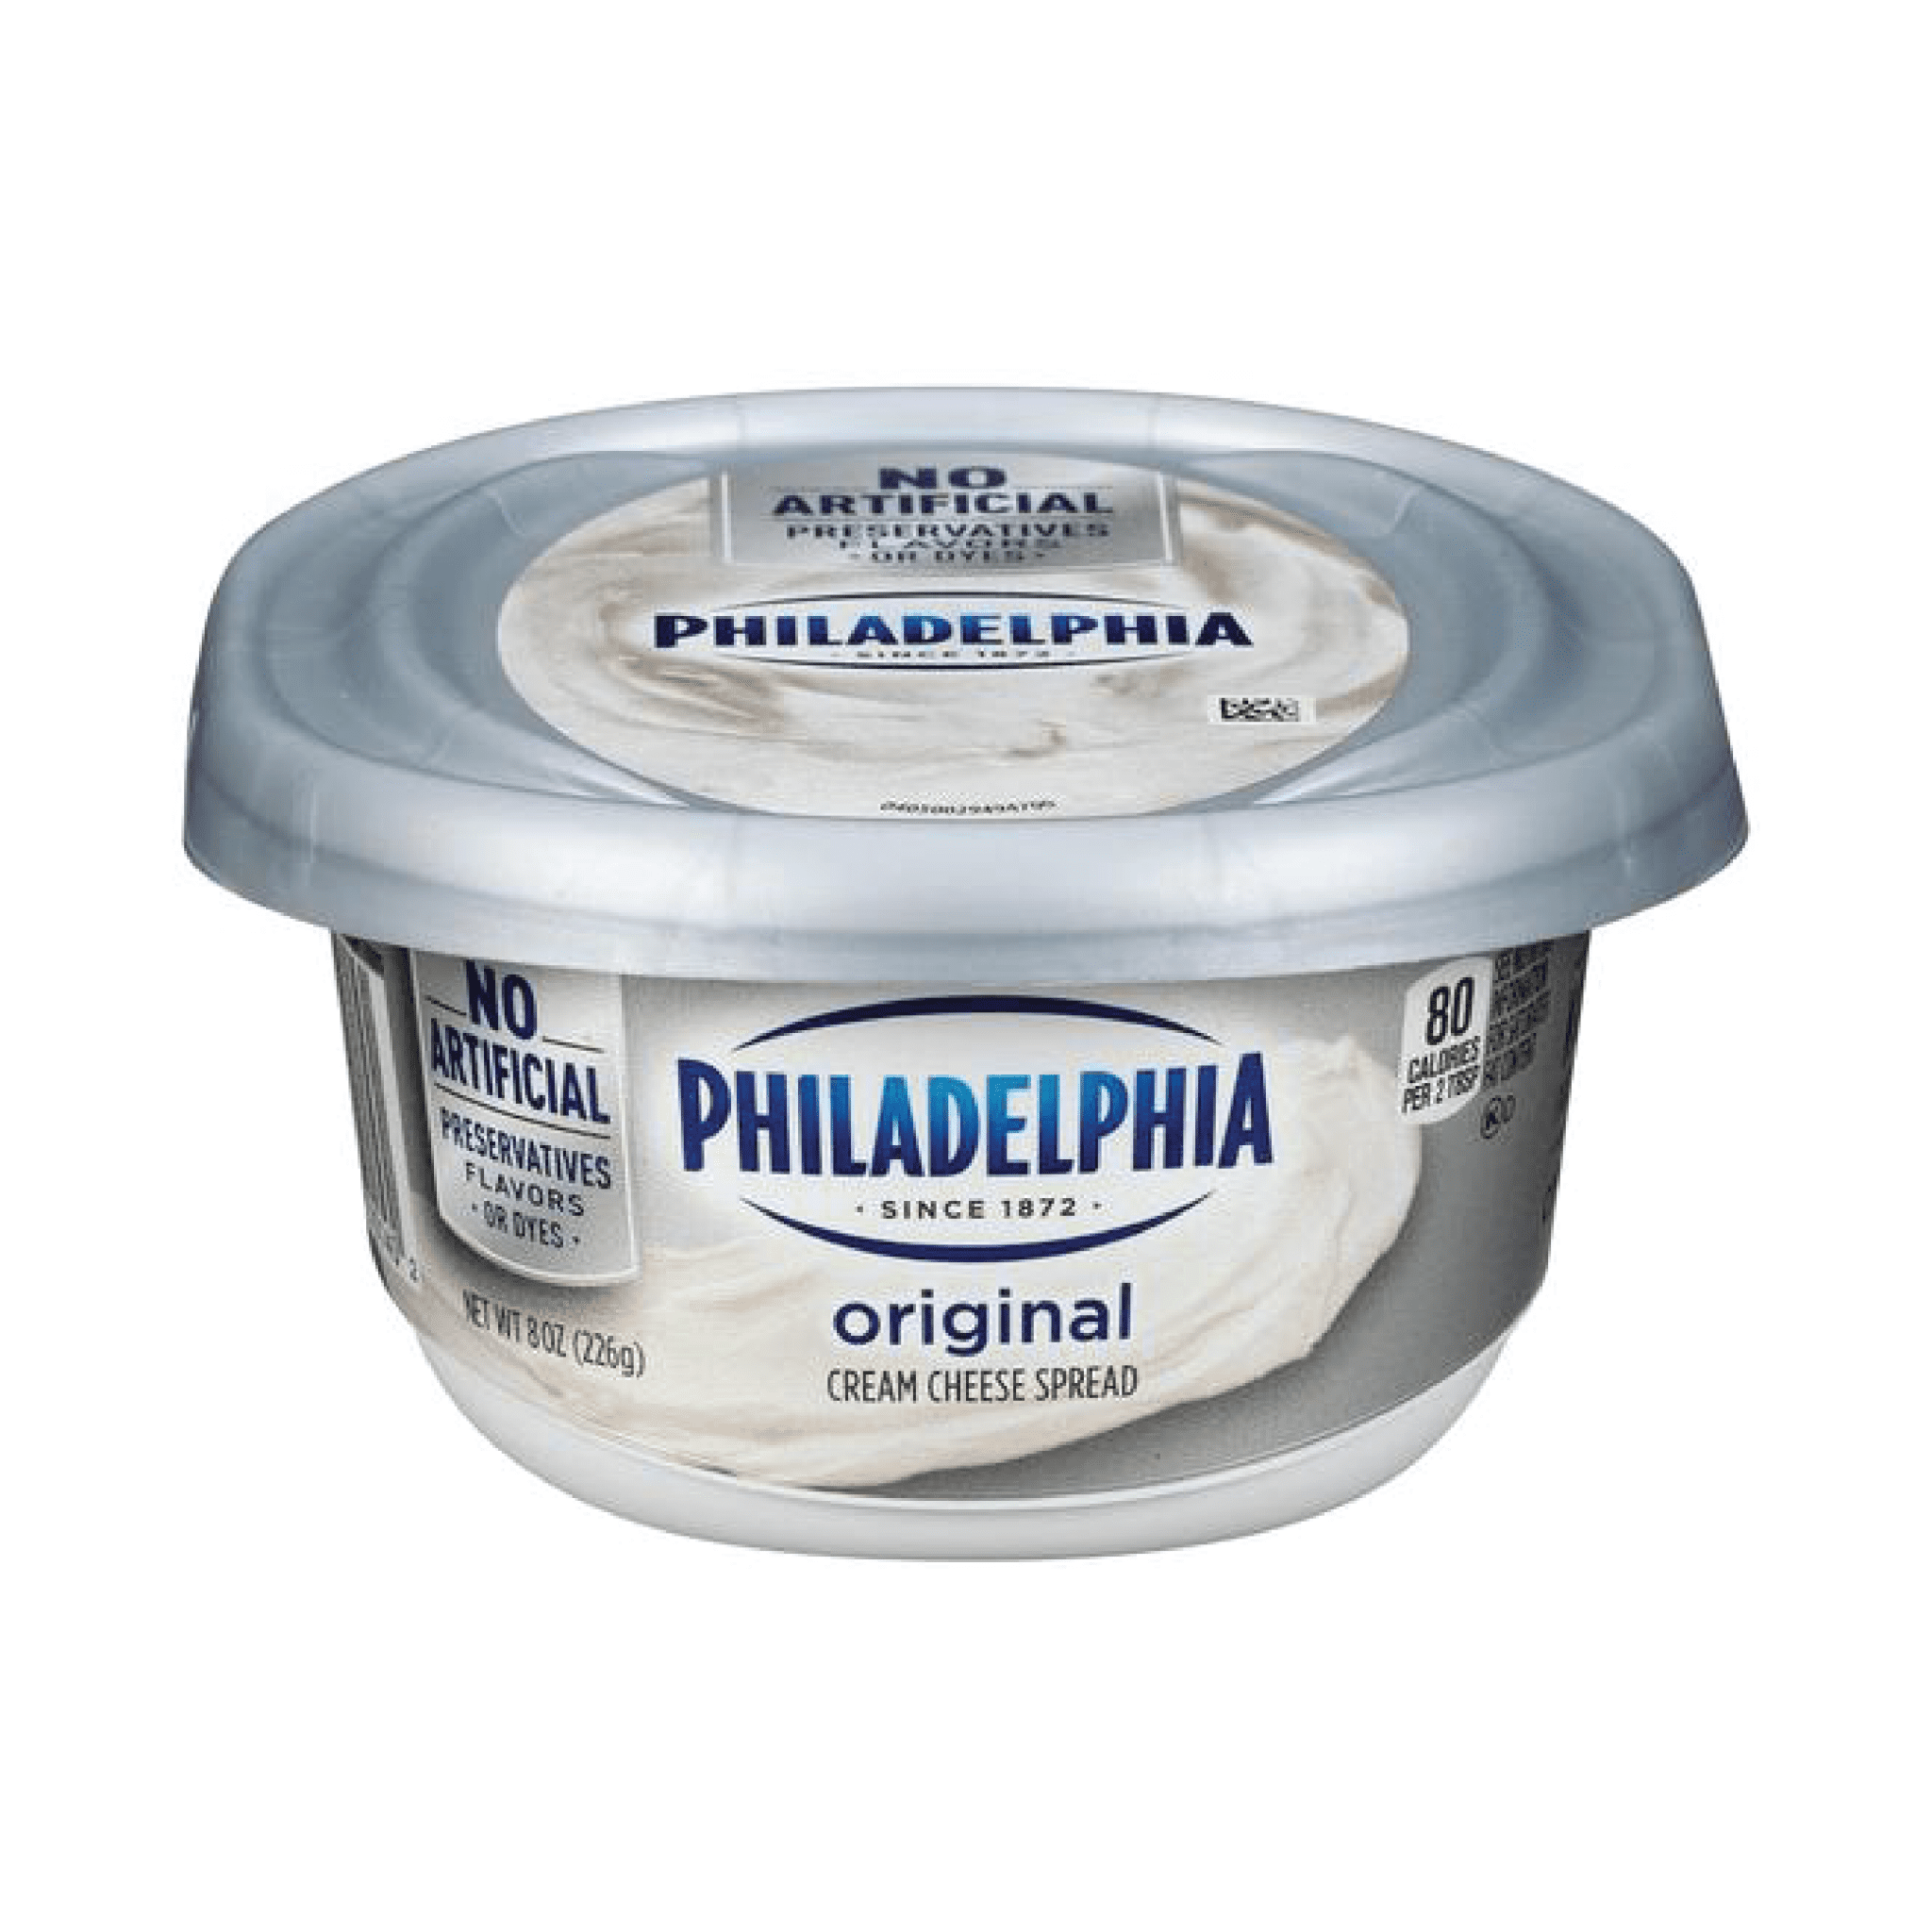 philadelphia cream cheese